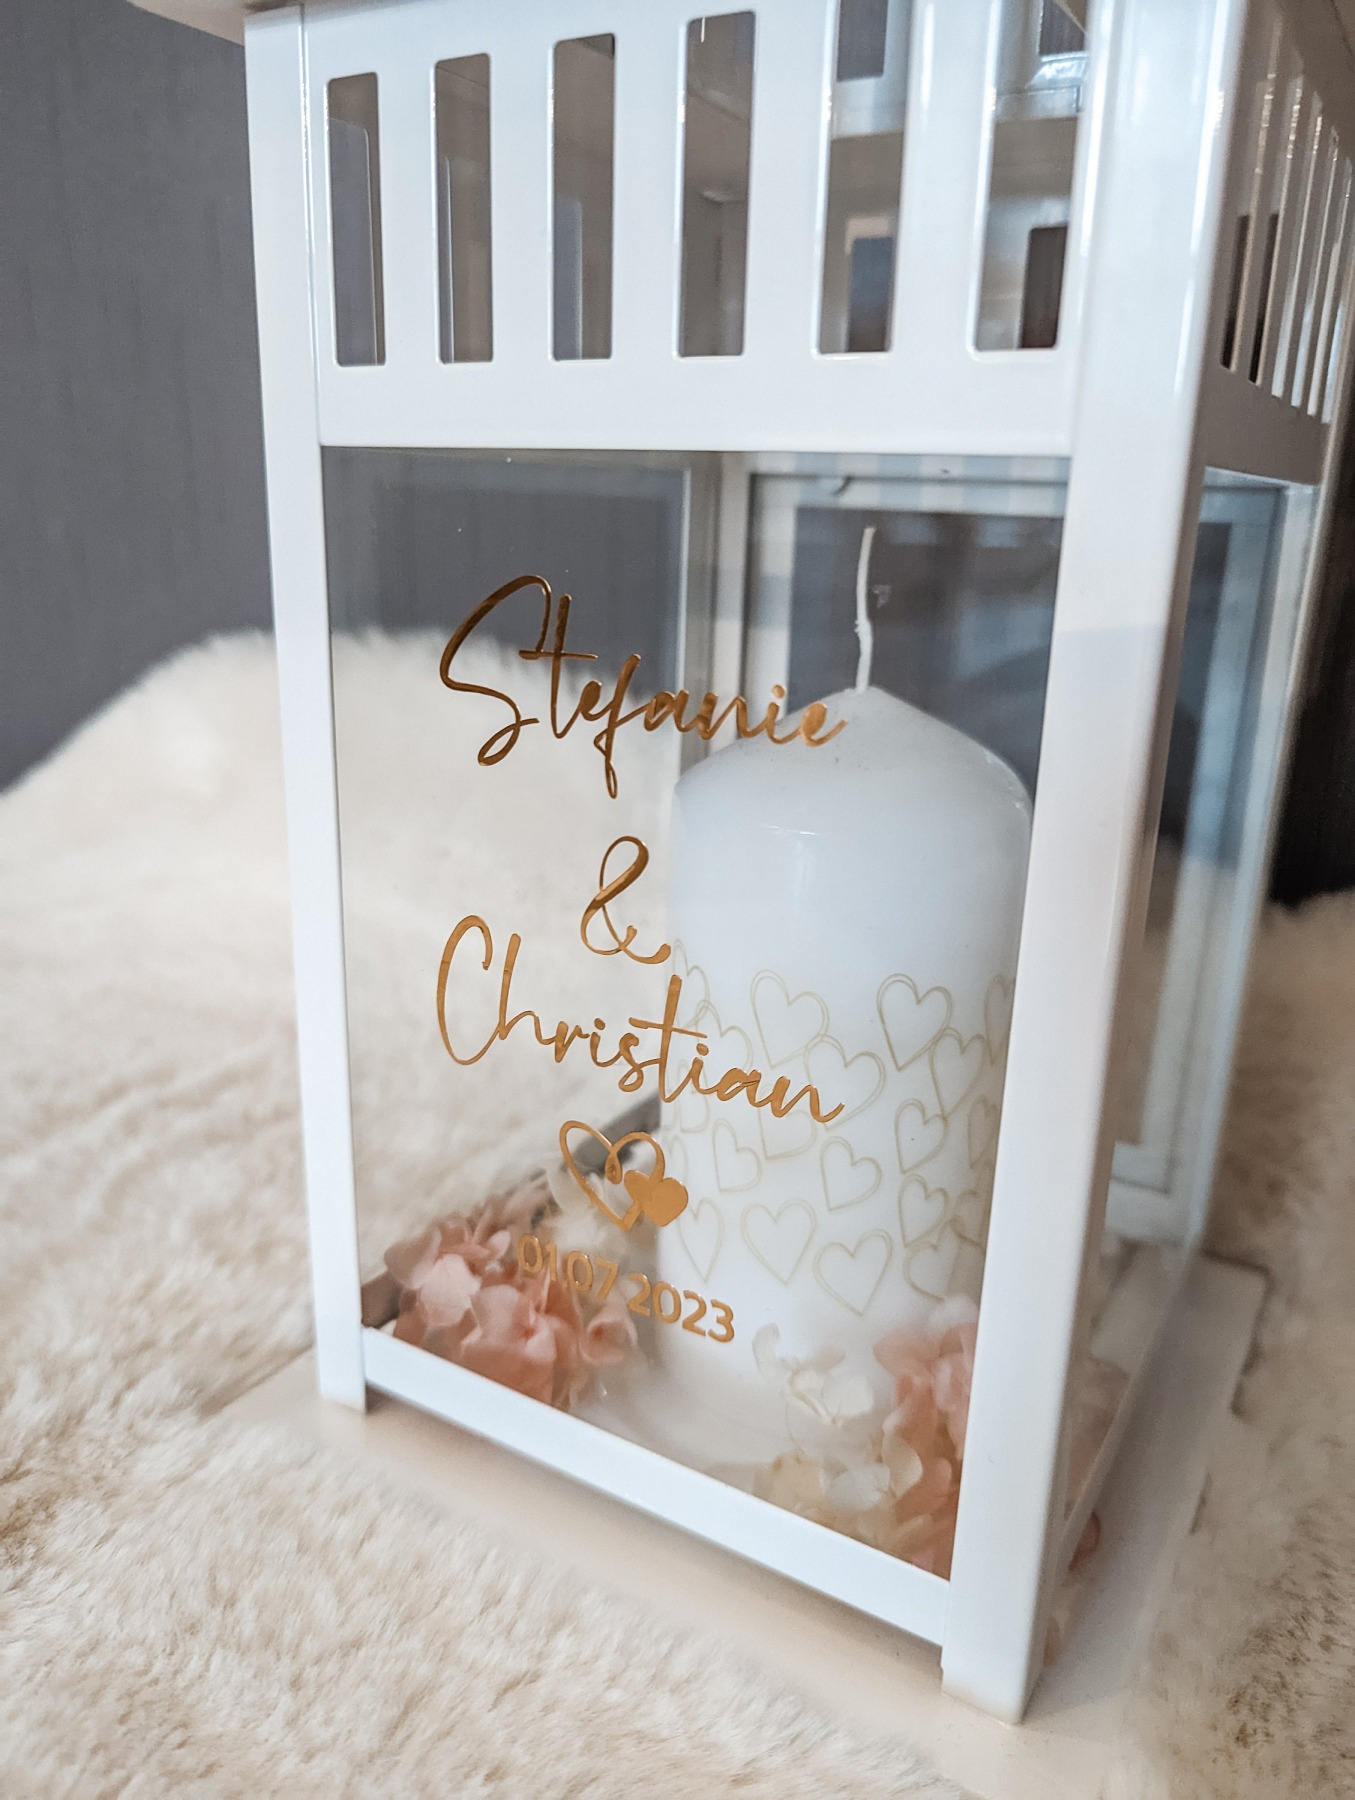 Aufkleber für eine personalisierte Laterne zur Hochzeit - Mit selbstklebendem Schriftzug eine